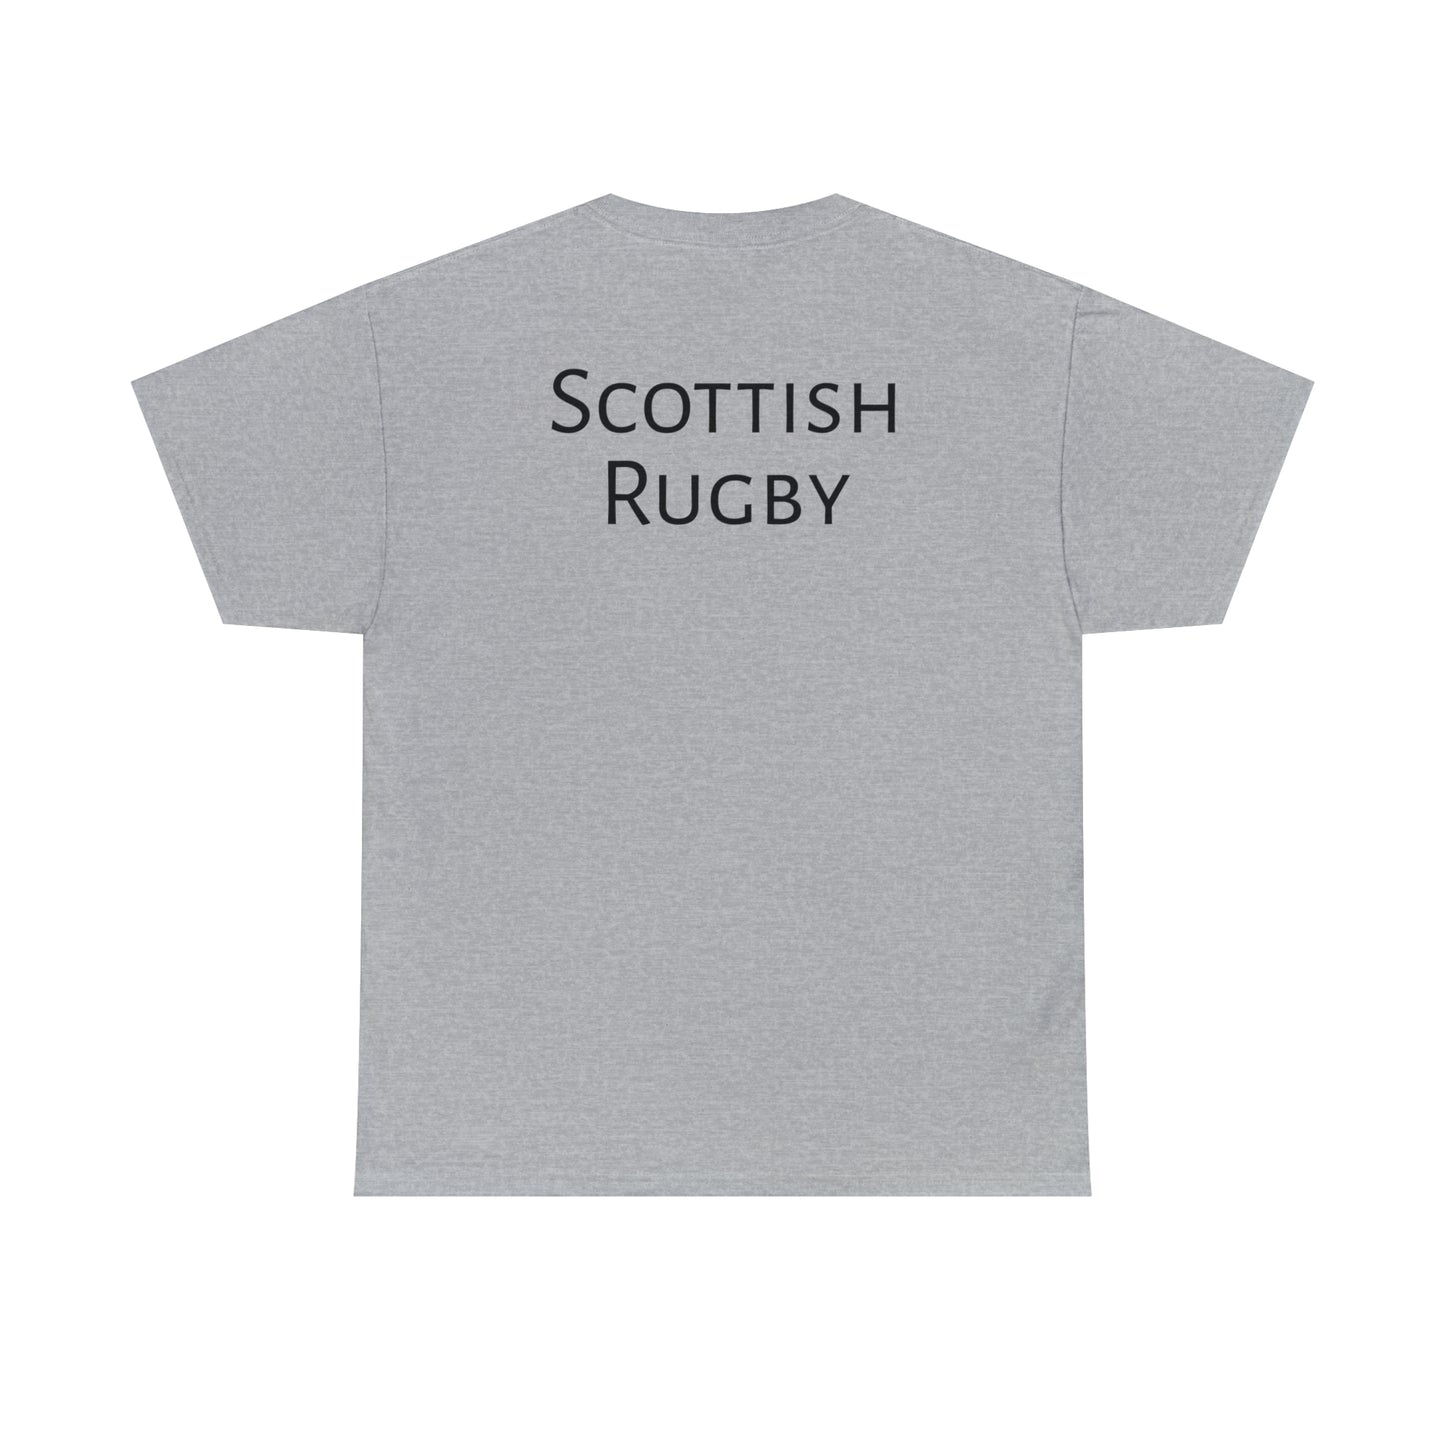 Scotland Winning RWC - light shirts